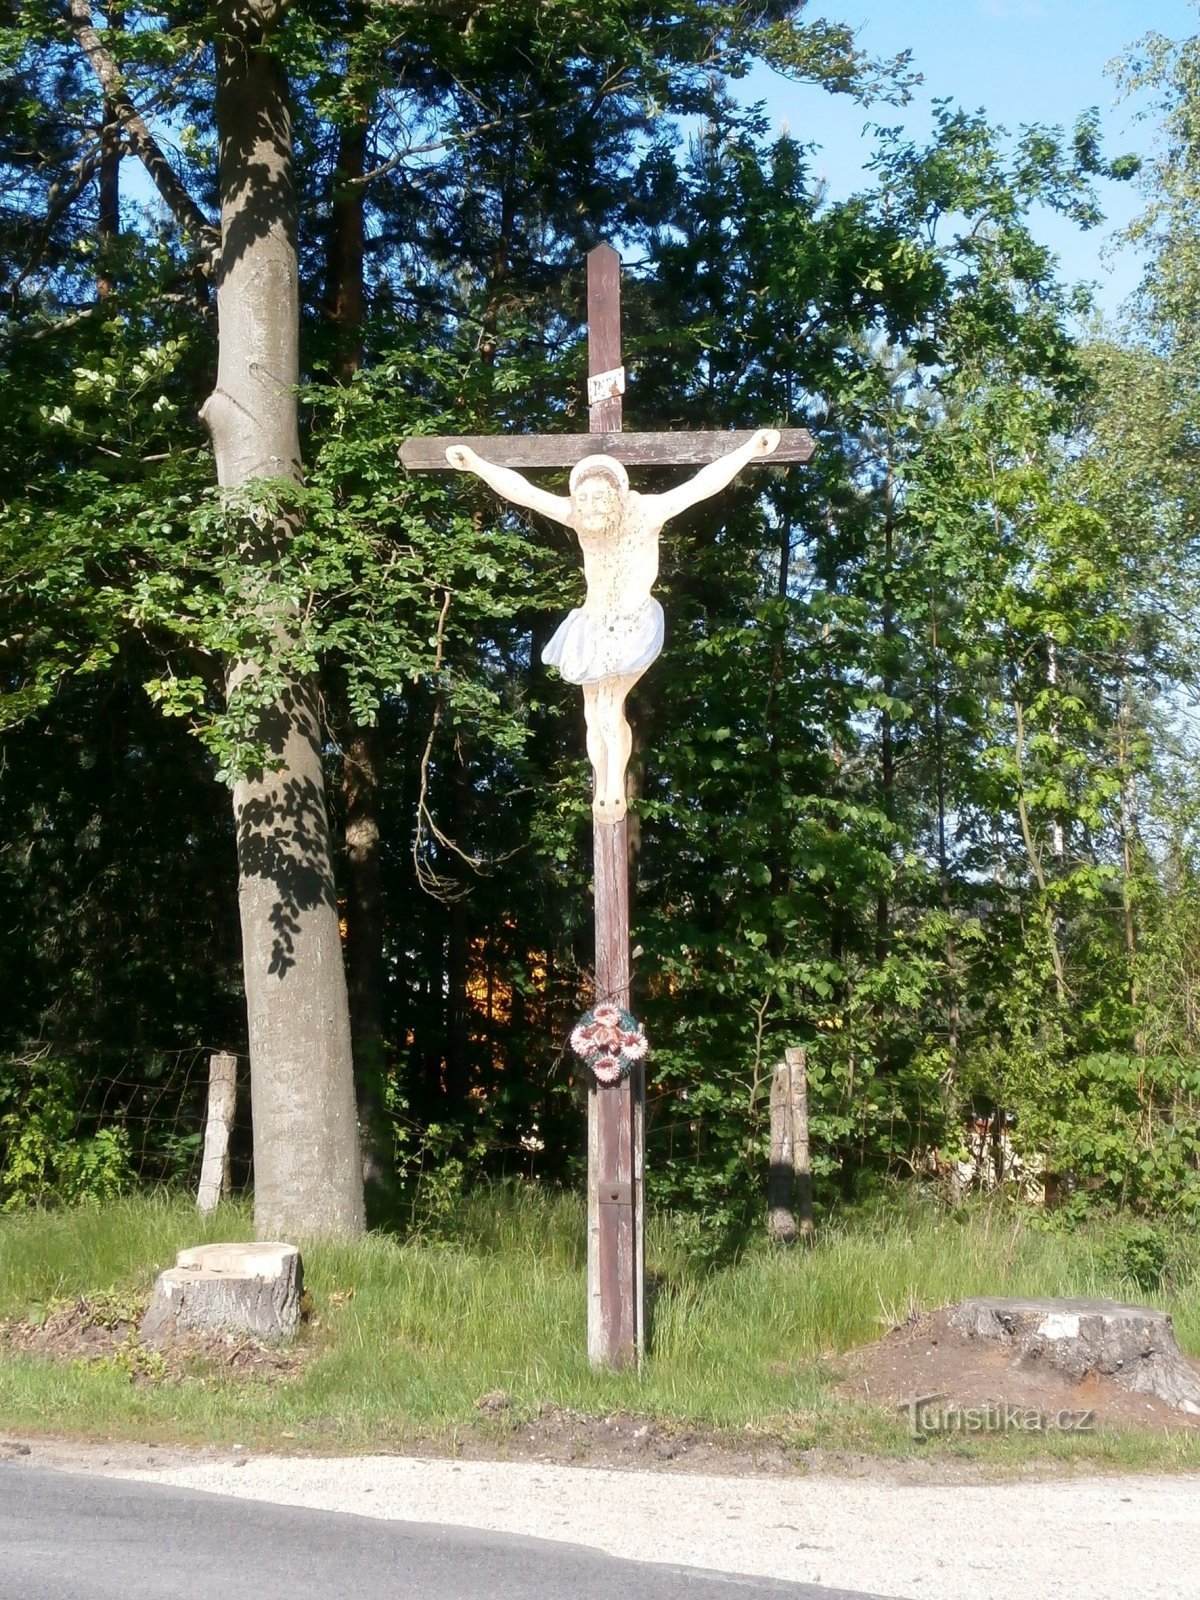 Cruce lângă Marokánka (Běleč nad Orlicí, 27.5.2017)